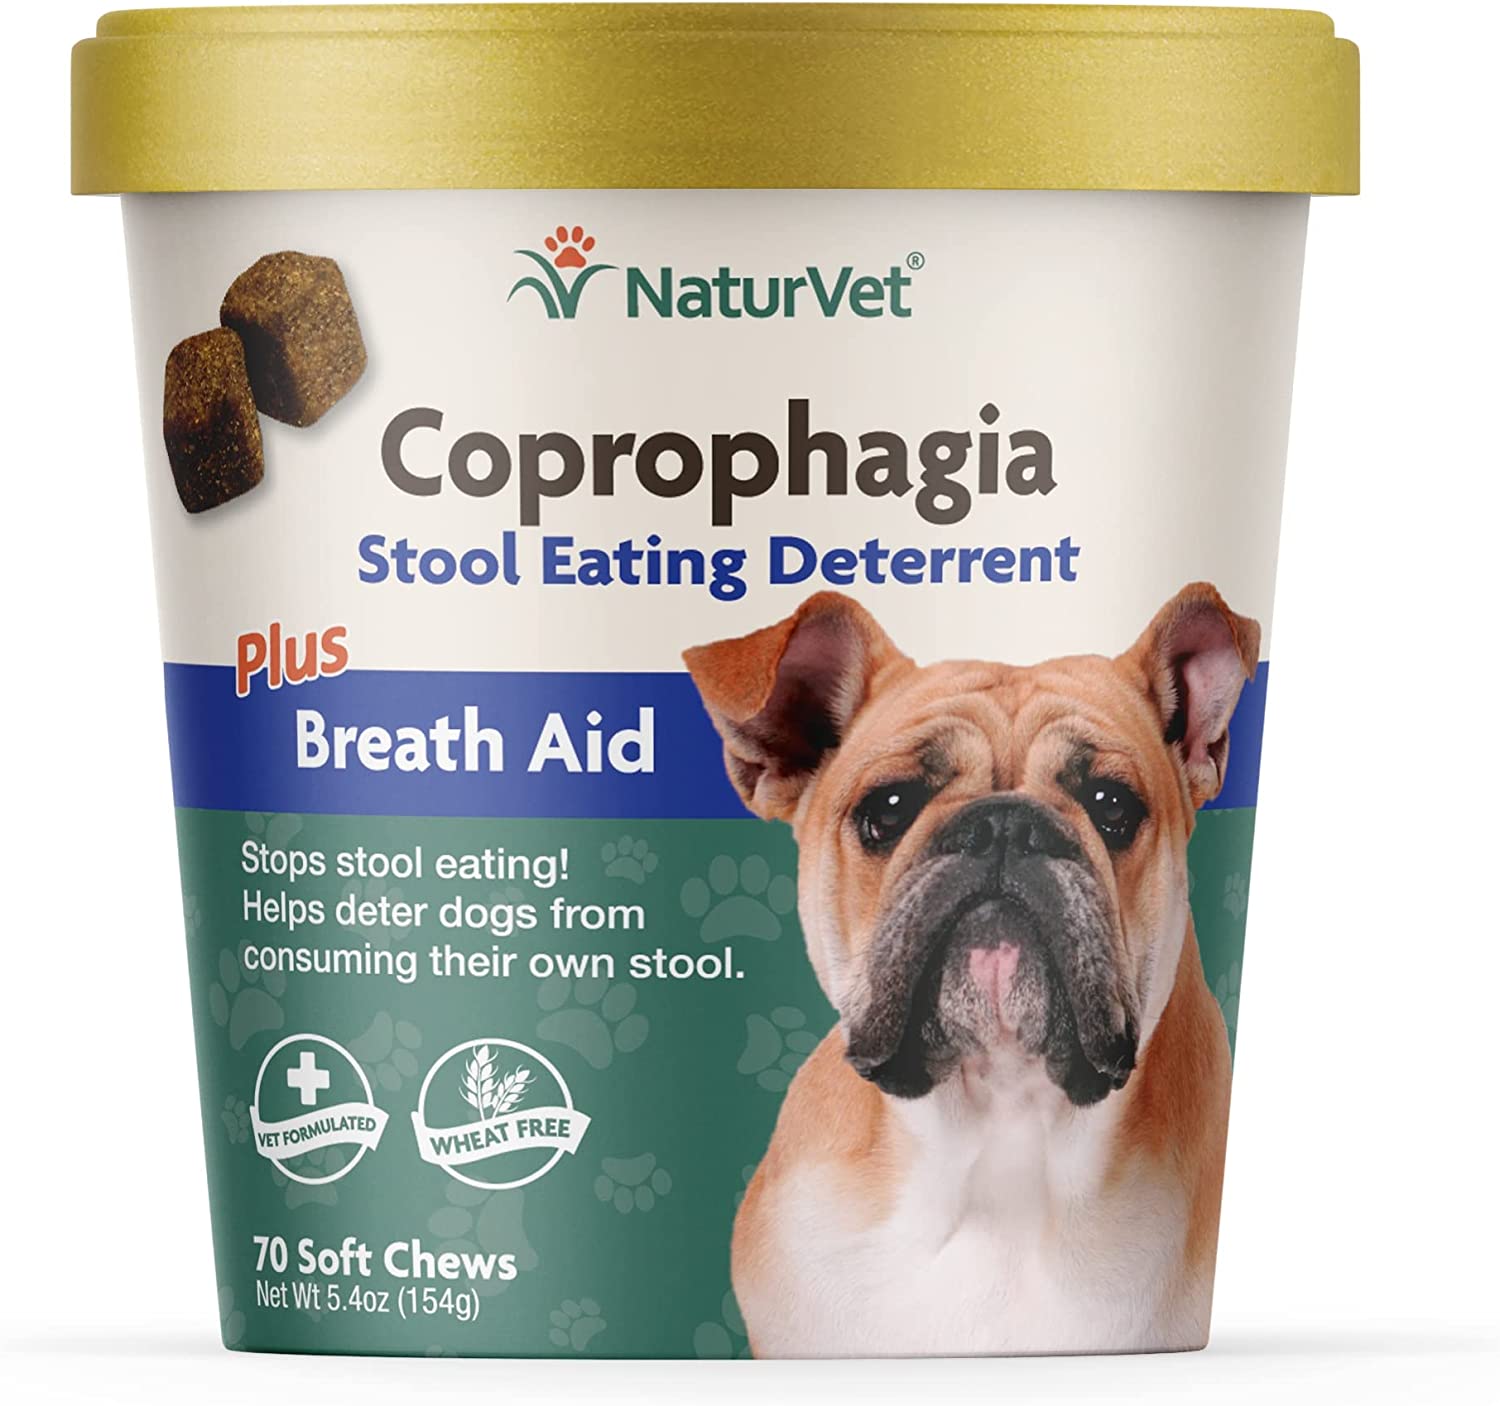 5. NaturVet Coprophagia Stool Eating Deterrent Plus Breath Aid